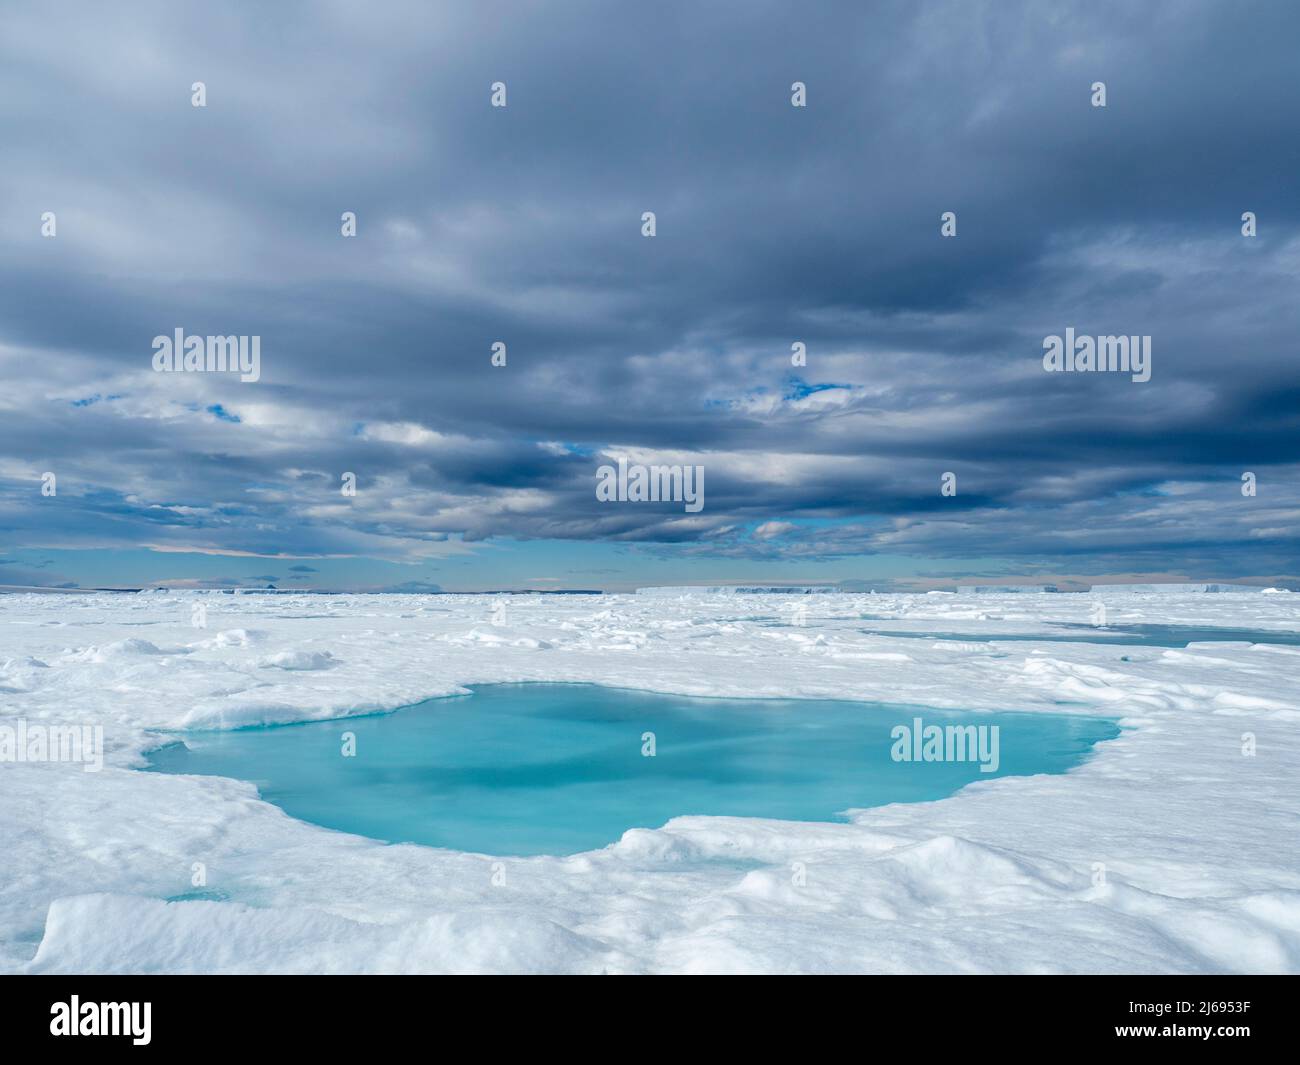 Ein Schmelzwasserpool auf dem ersten Jahr Meereis in der Nähe von Snow Hill Island, Weddellmeer, Antarktis, Polarregionen Stockfoto